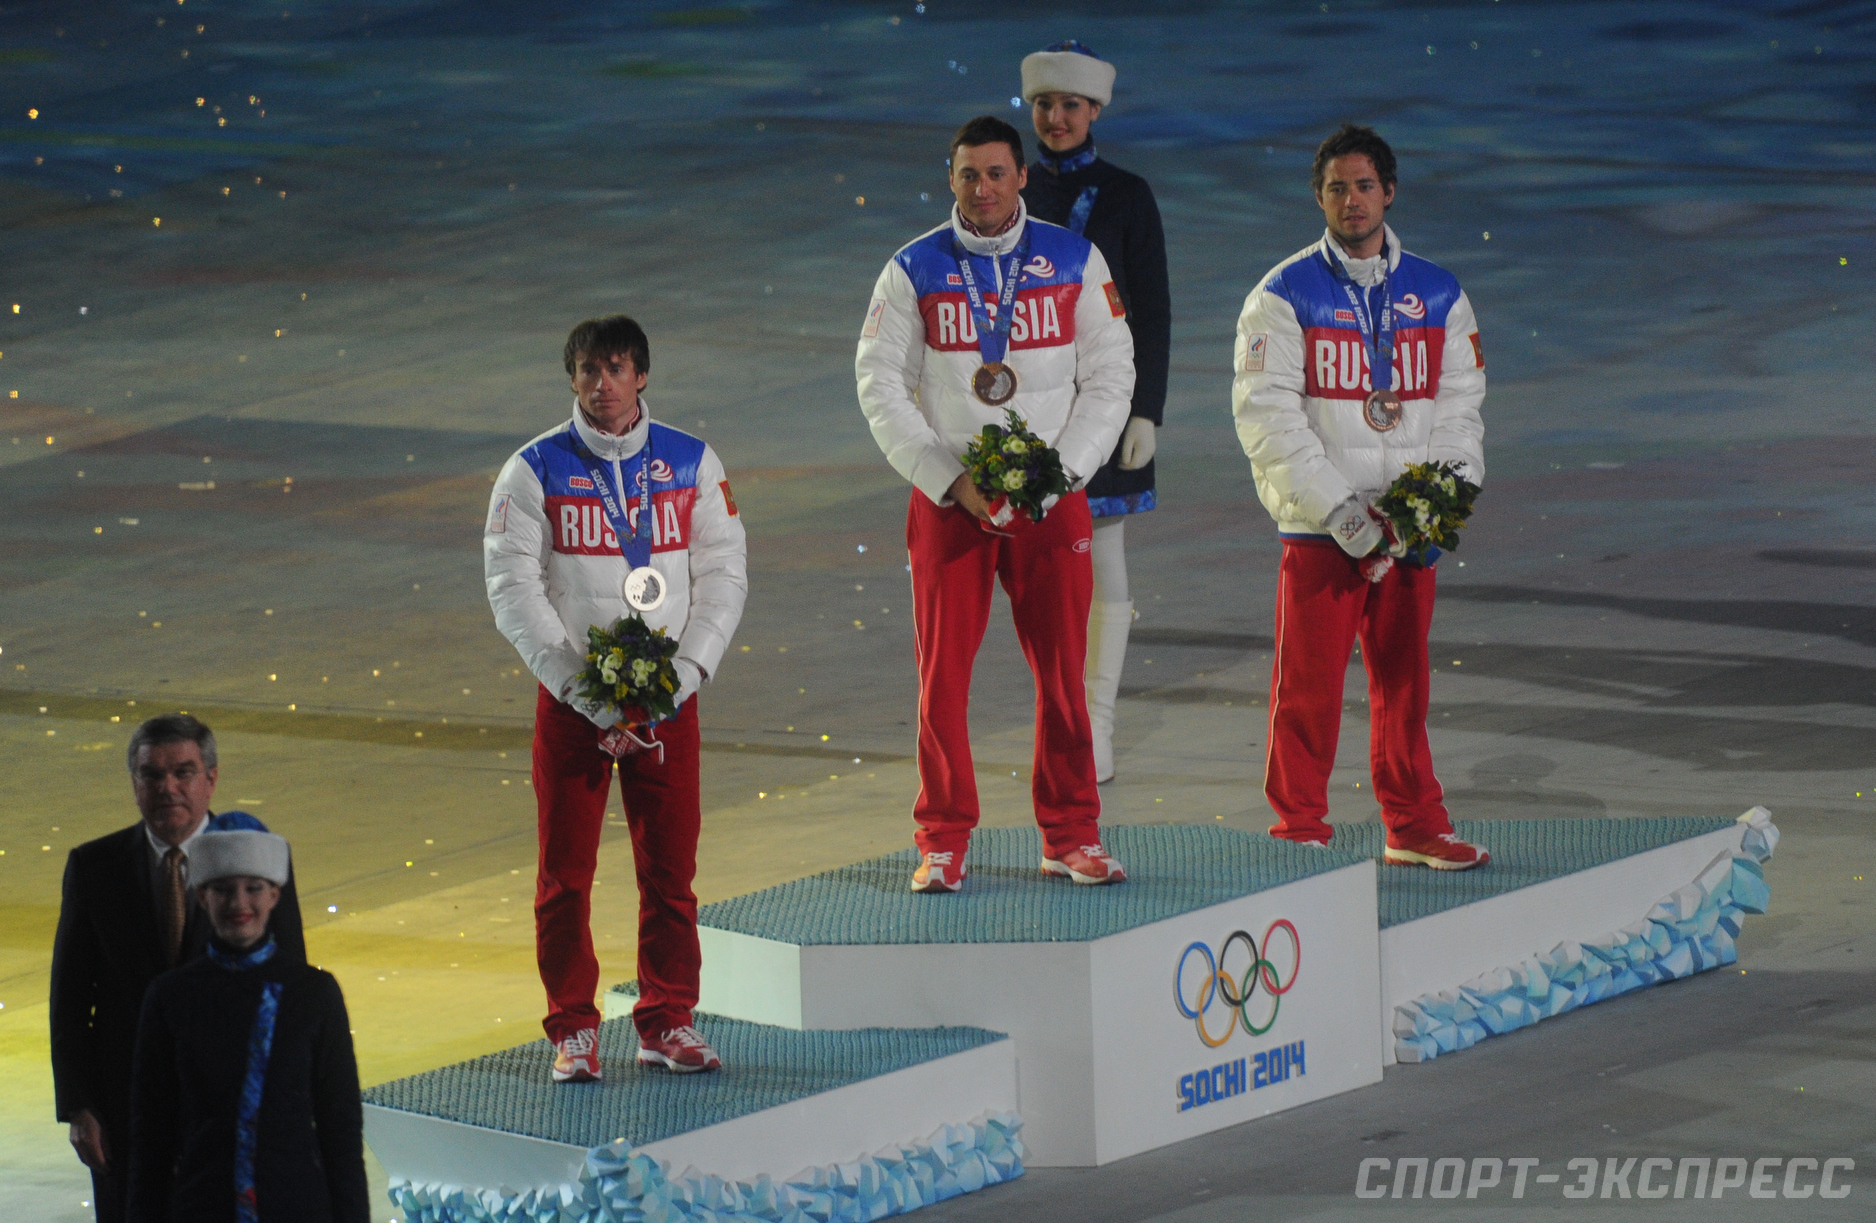 Чемпионы олимпийских игр 2014. Легков Вылегжанин Черноусов.